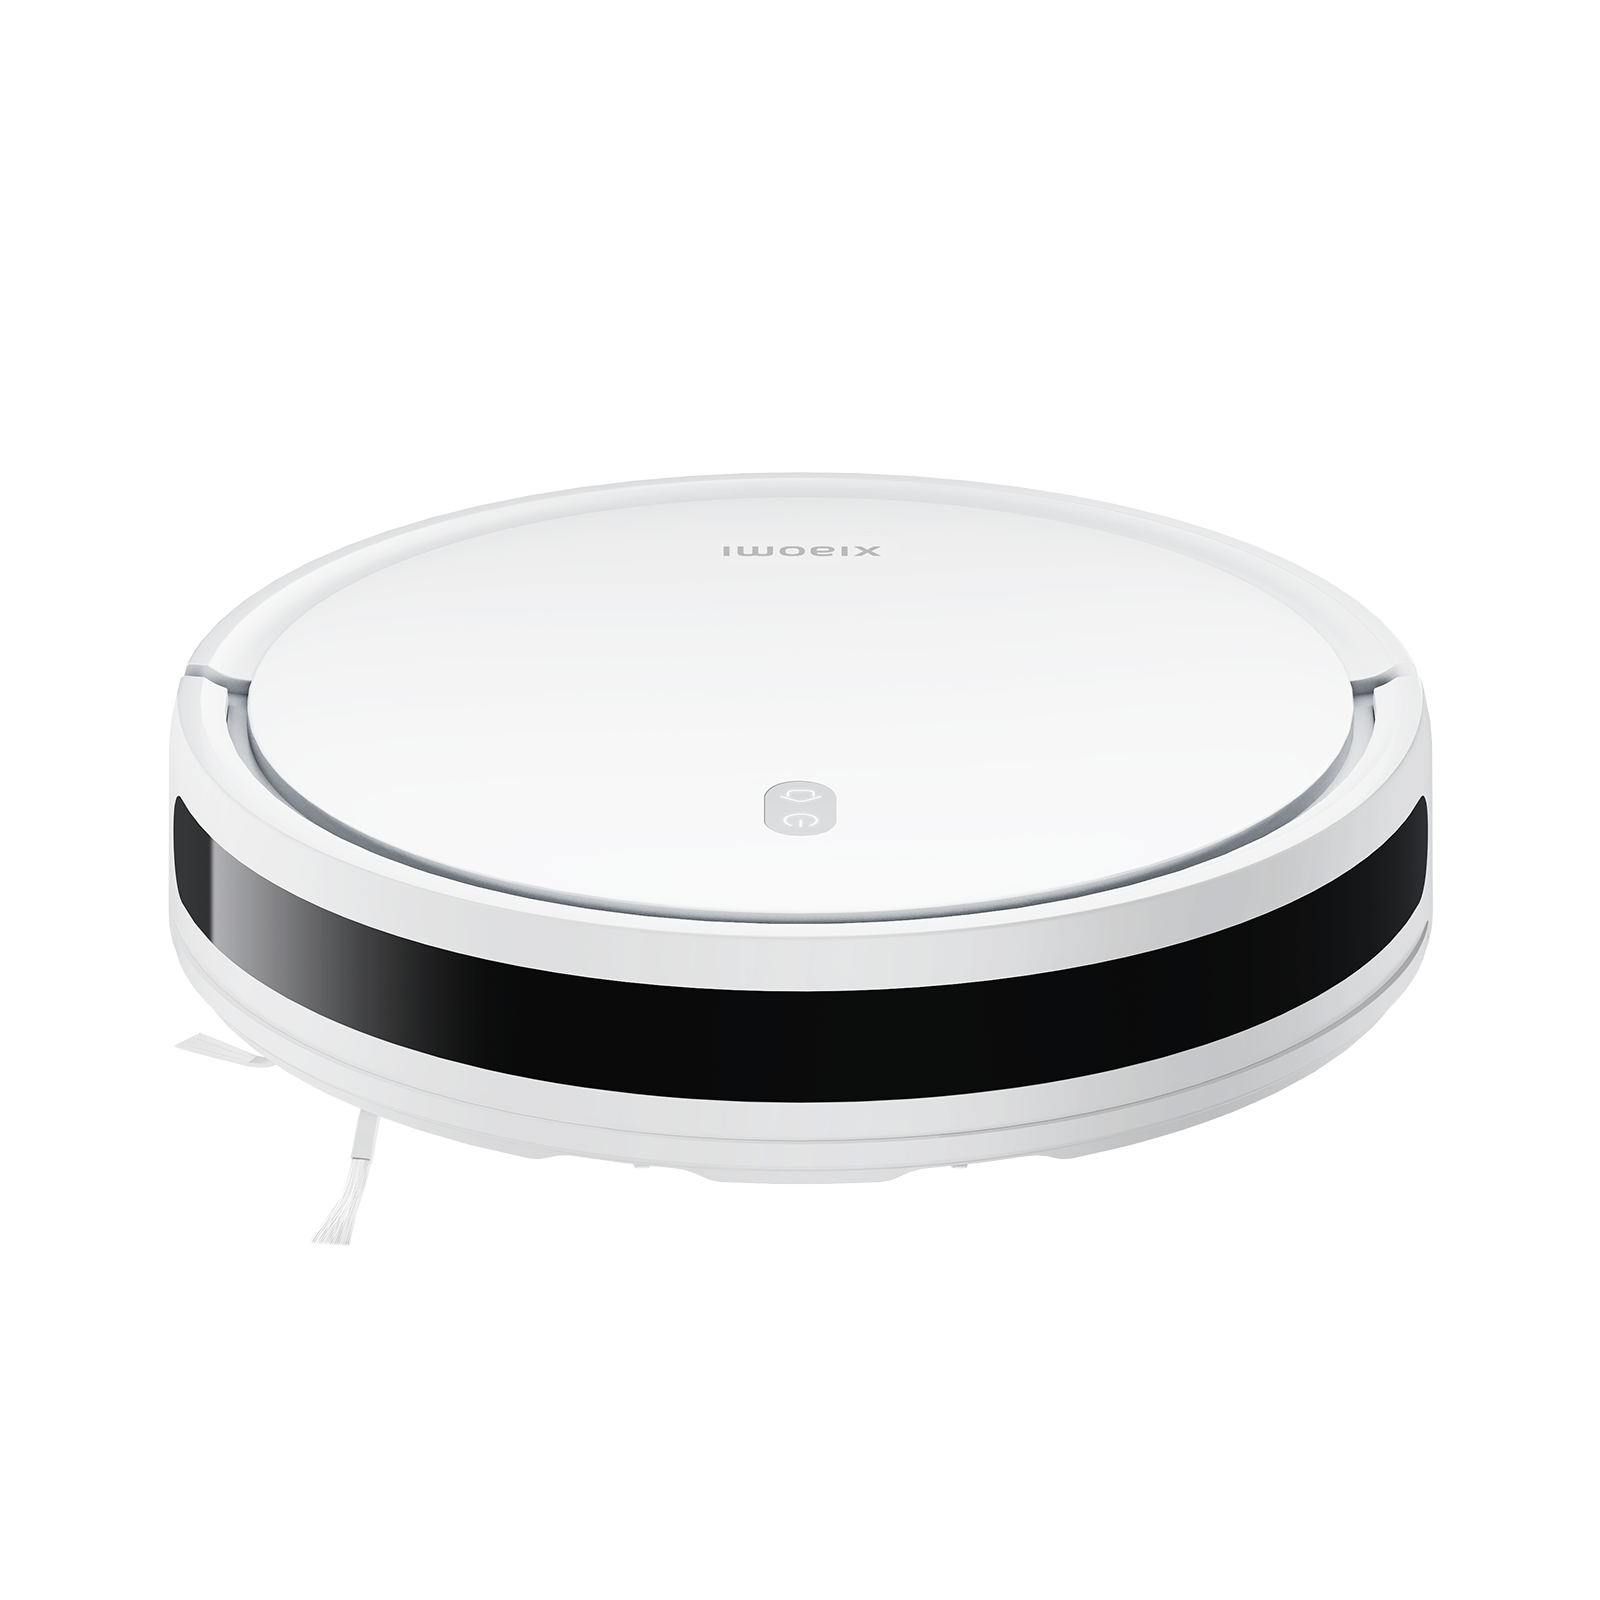 Robot Aspirador Xiaomi Robot Vacuum E12/ Friegasuelos/ control por WiFi/  Blanco